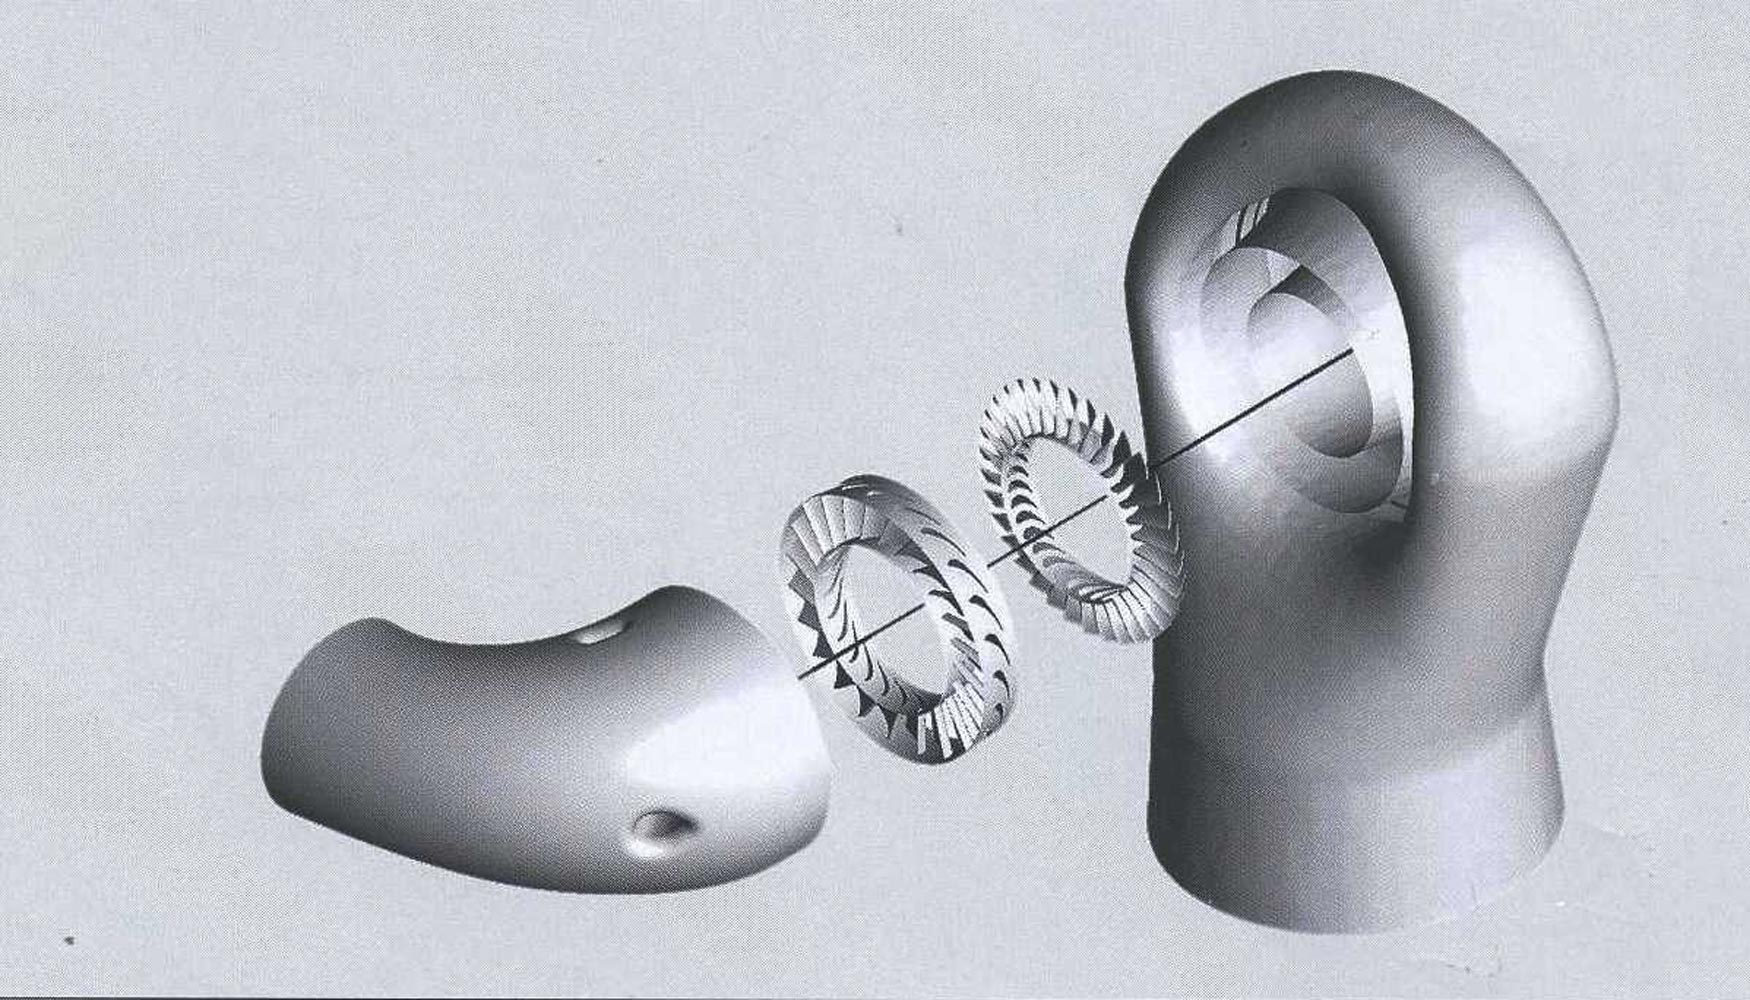 Modelo computacional de la turbina. De izquierda a derecha: colector de admisin, anillo de tobera, rotor y colector de escape...